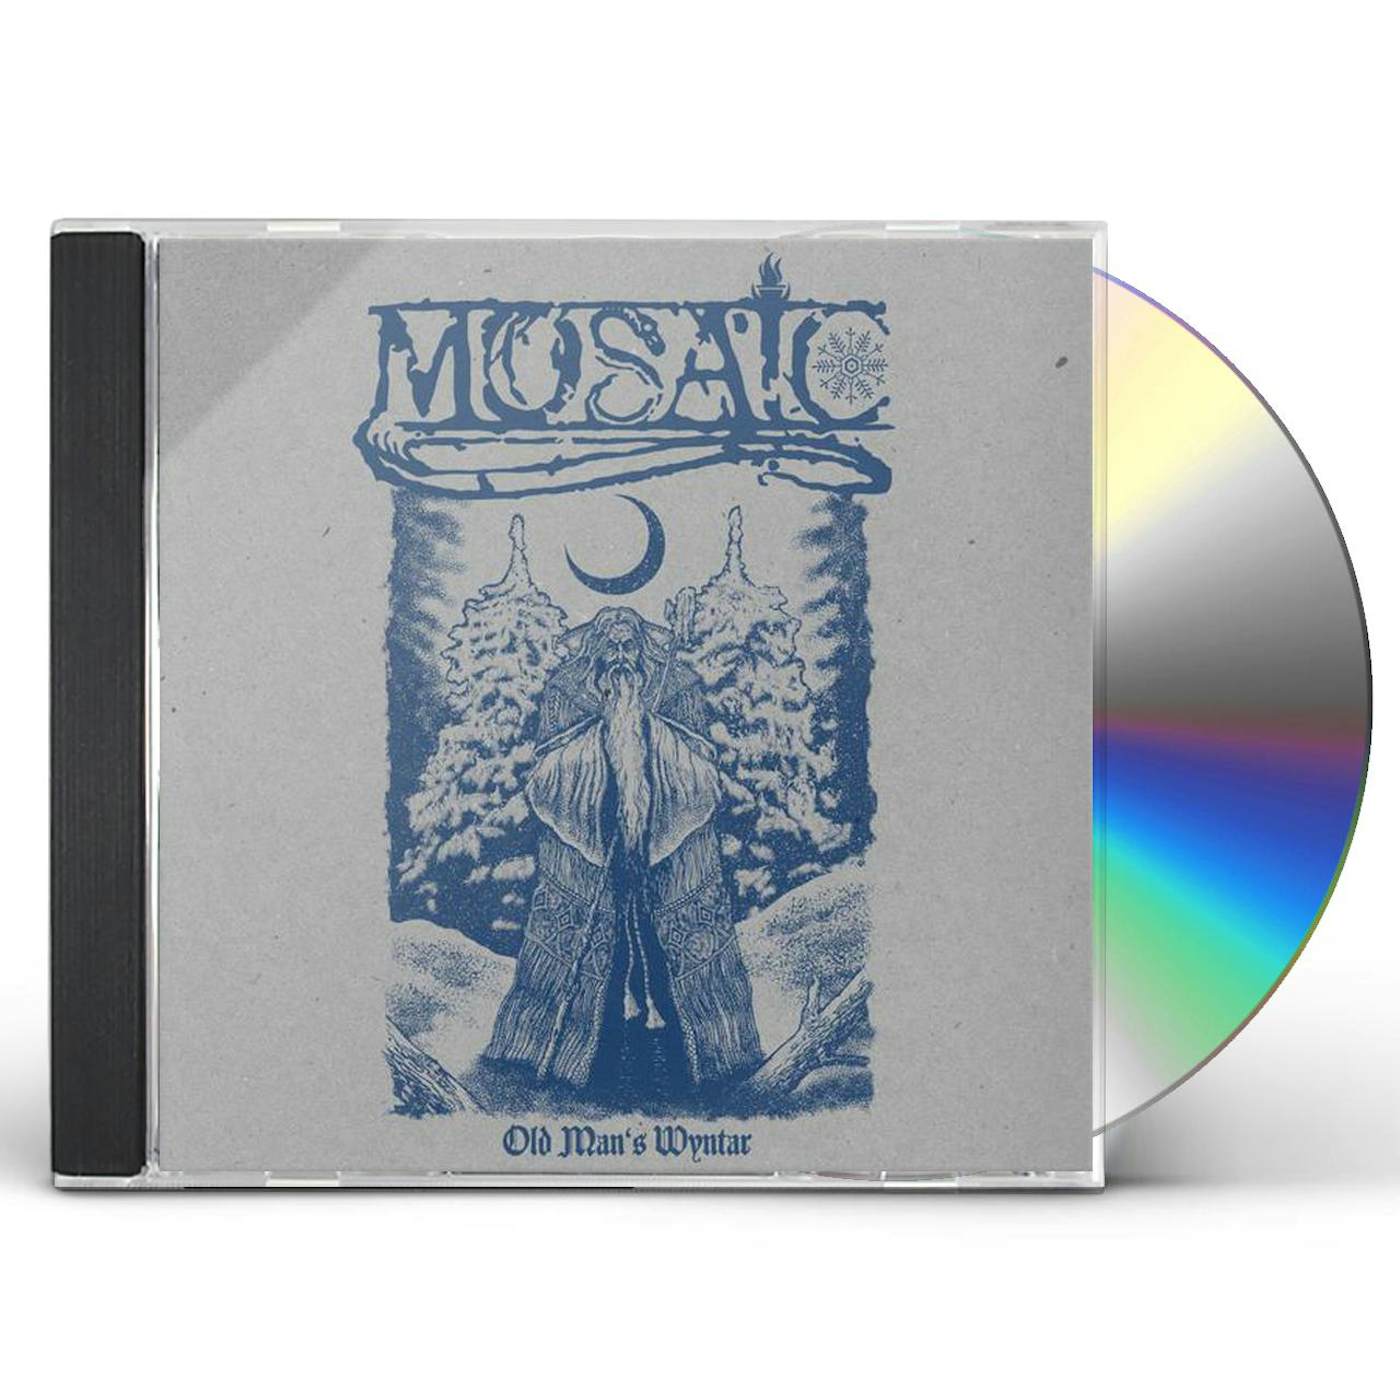 Mosaic OLD MANS WYNTAR CD